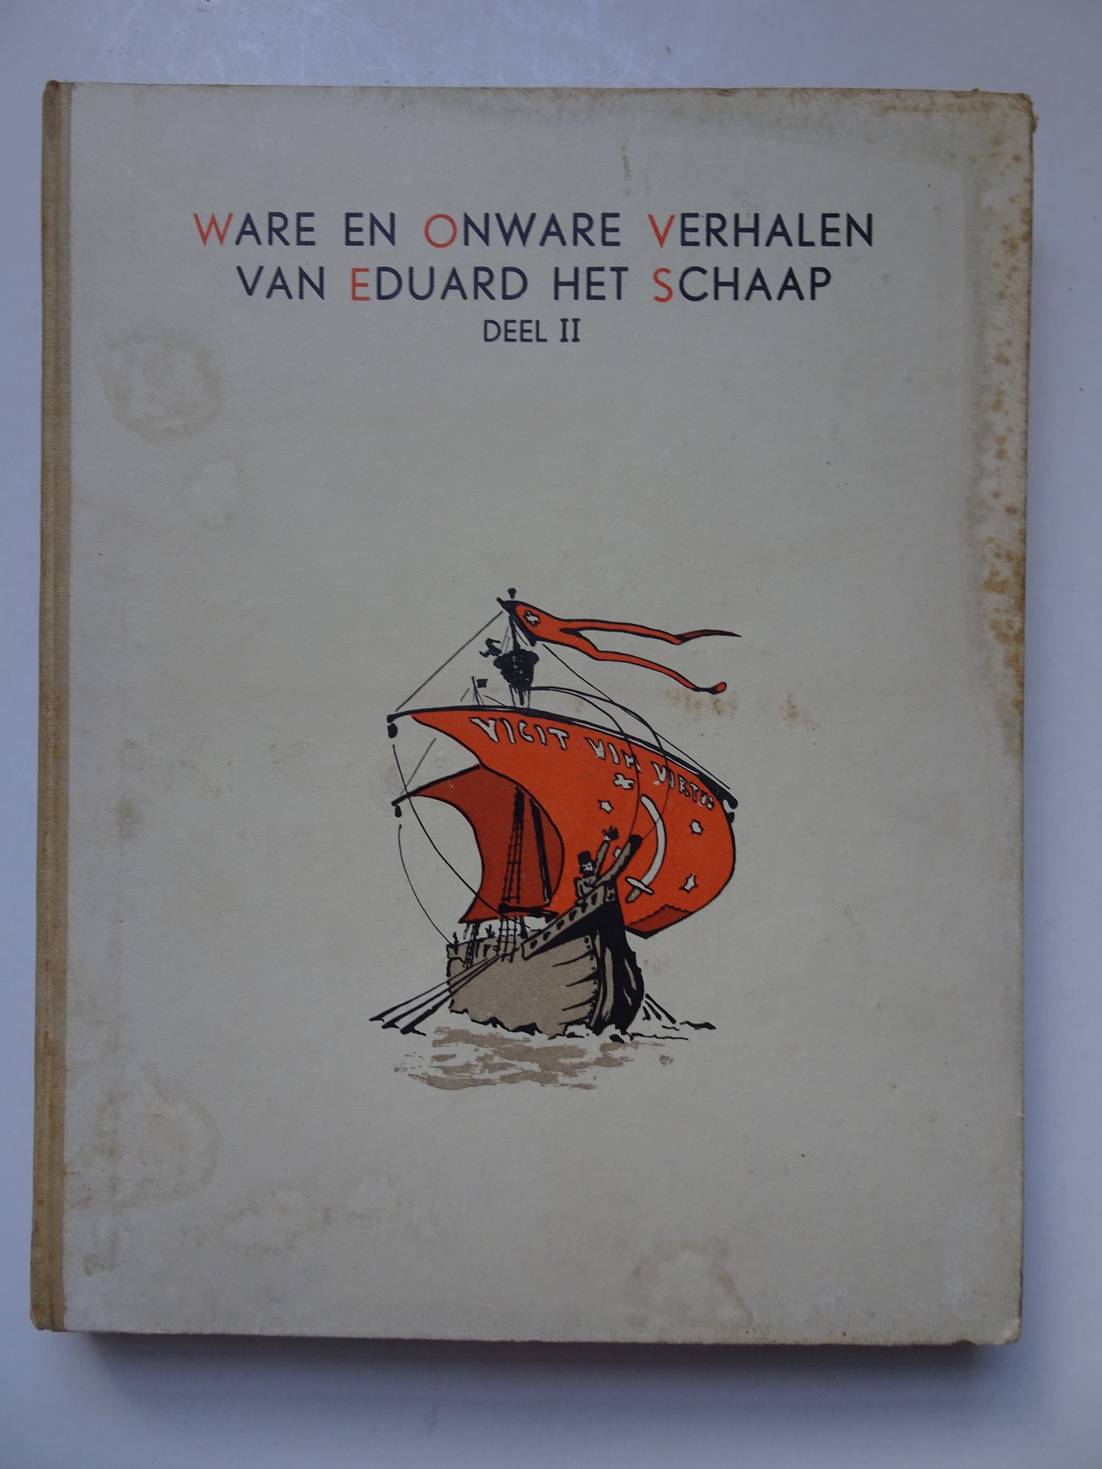 N.n.. - Ware en onware verhalen van Eduard het Schaap. Deel II. Uitgegeven ter gelegenheid der feestelijke herdenking van het 700-jarig bestaan van Haarlem als stad, augustus 1946.